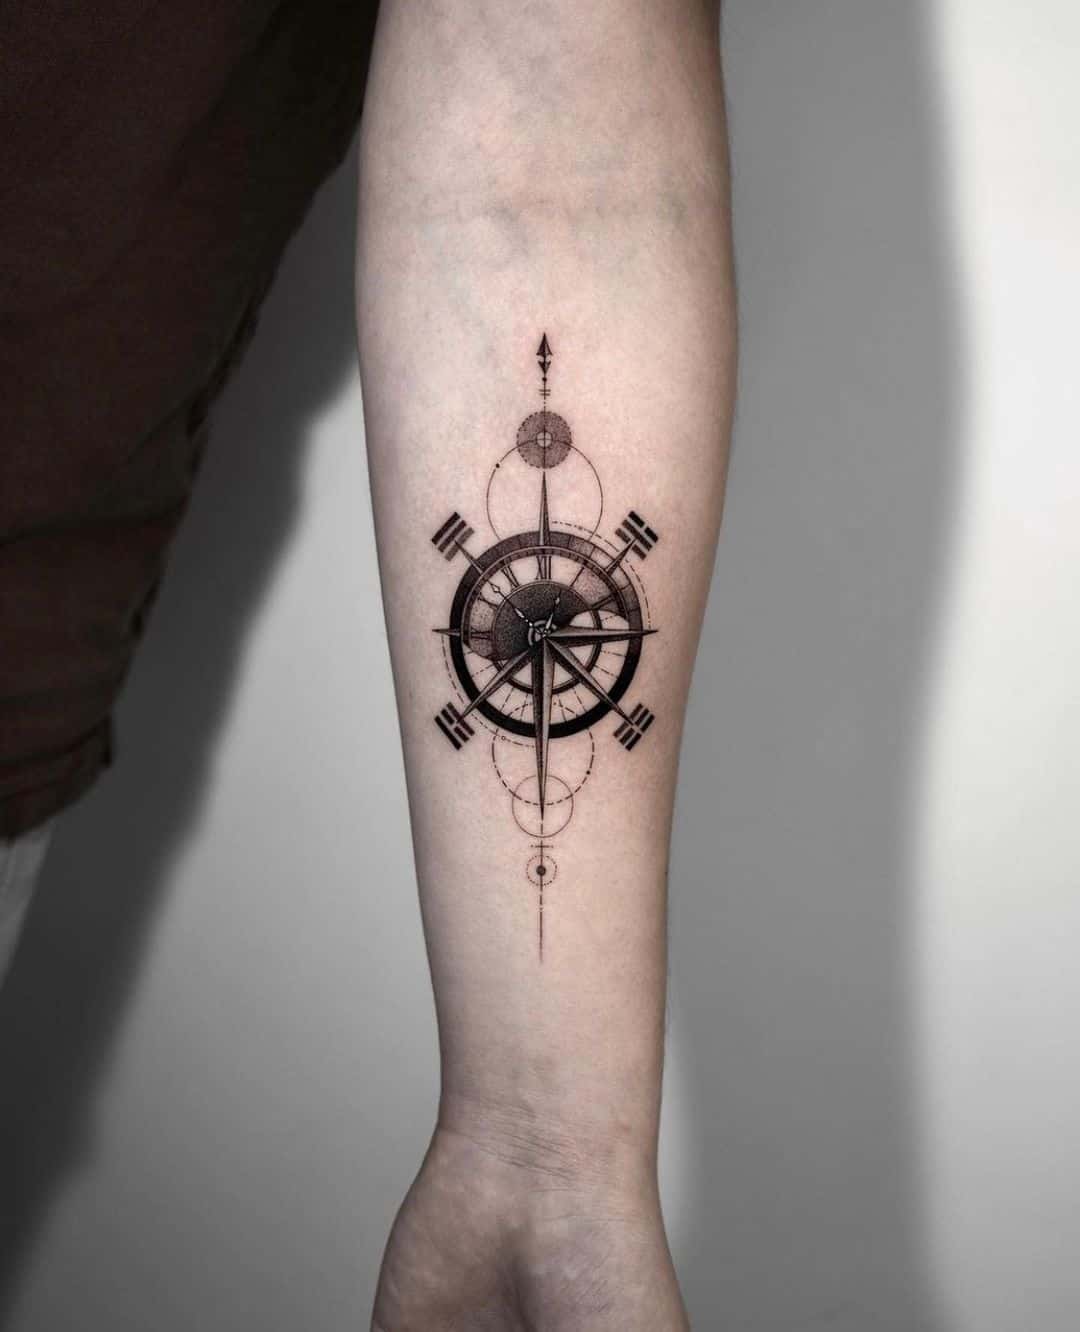 Compass tattoo by seoulinktattoo